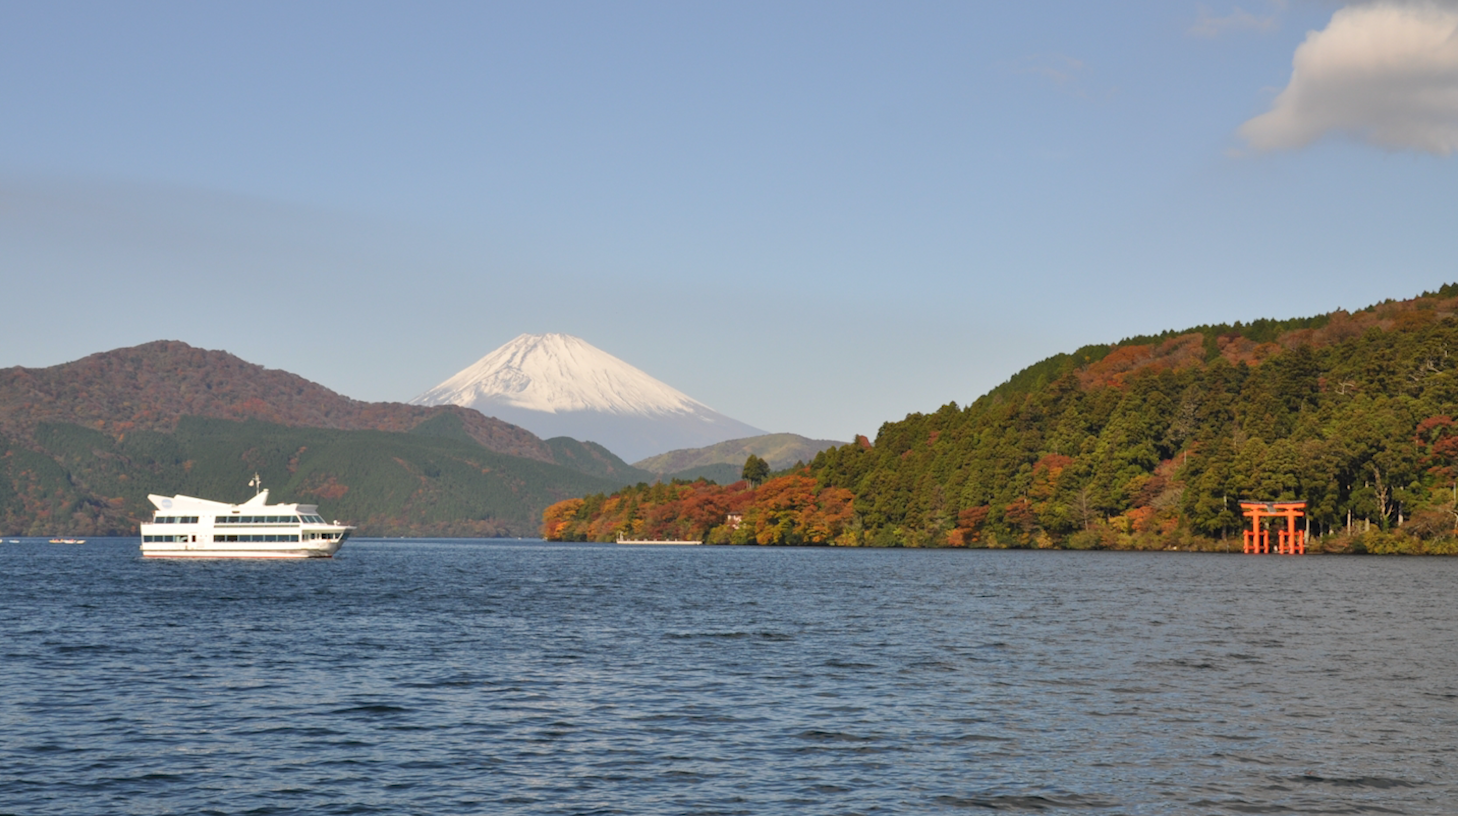 ashinoko_lake